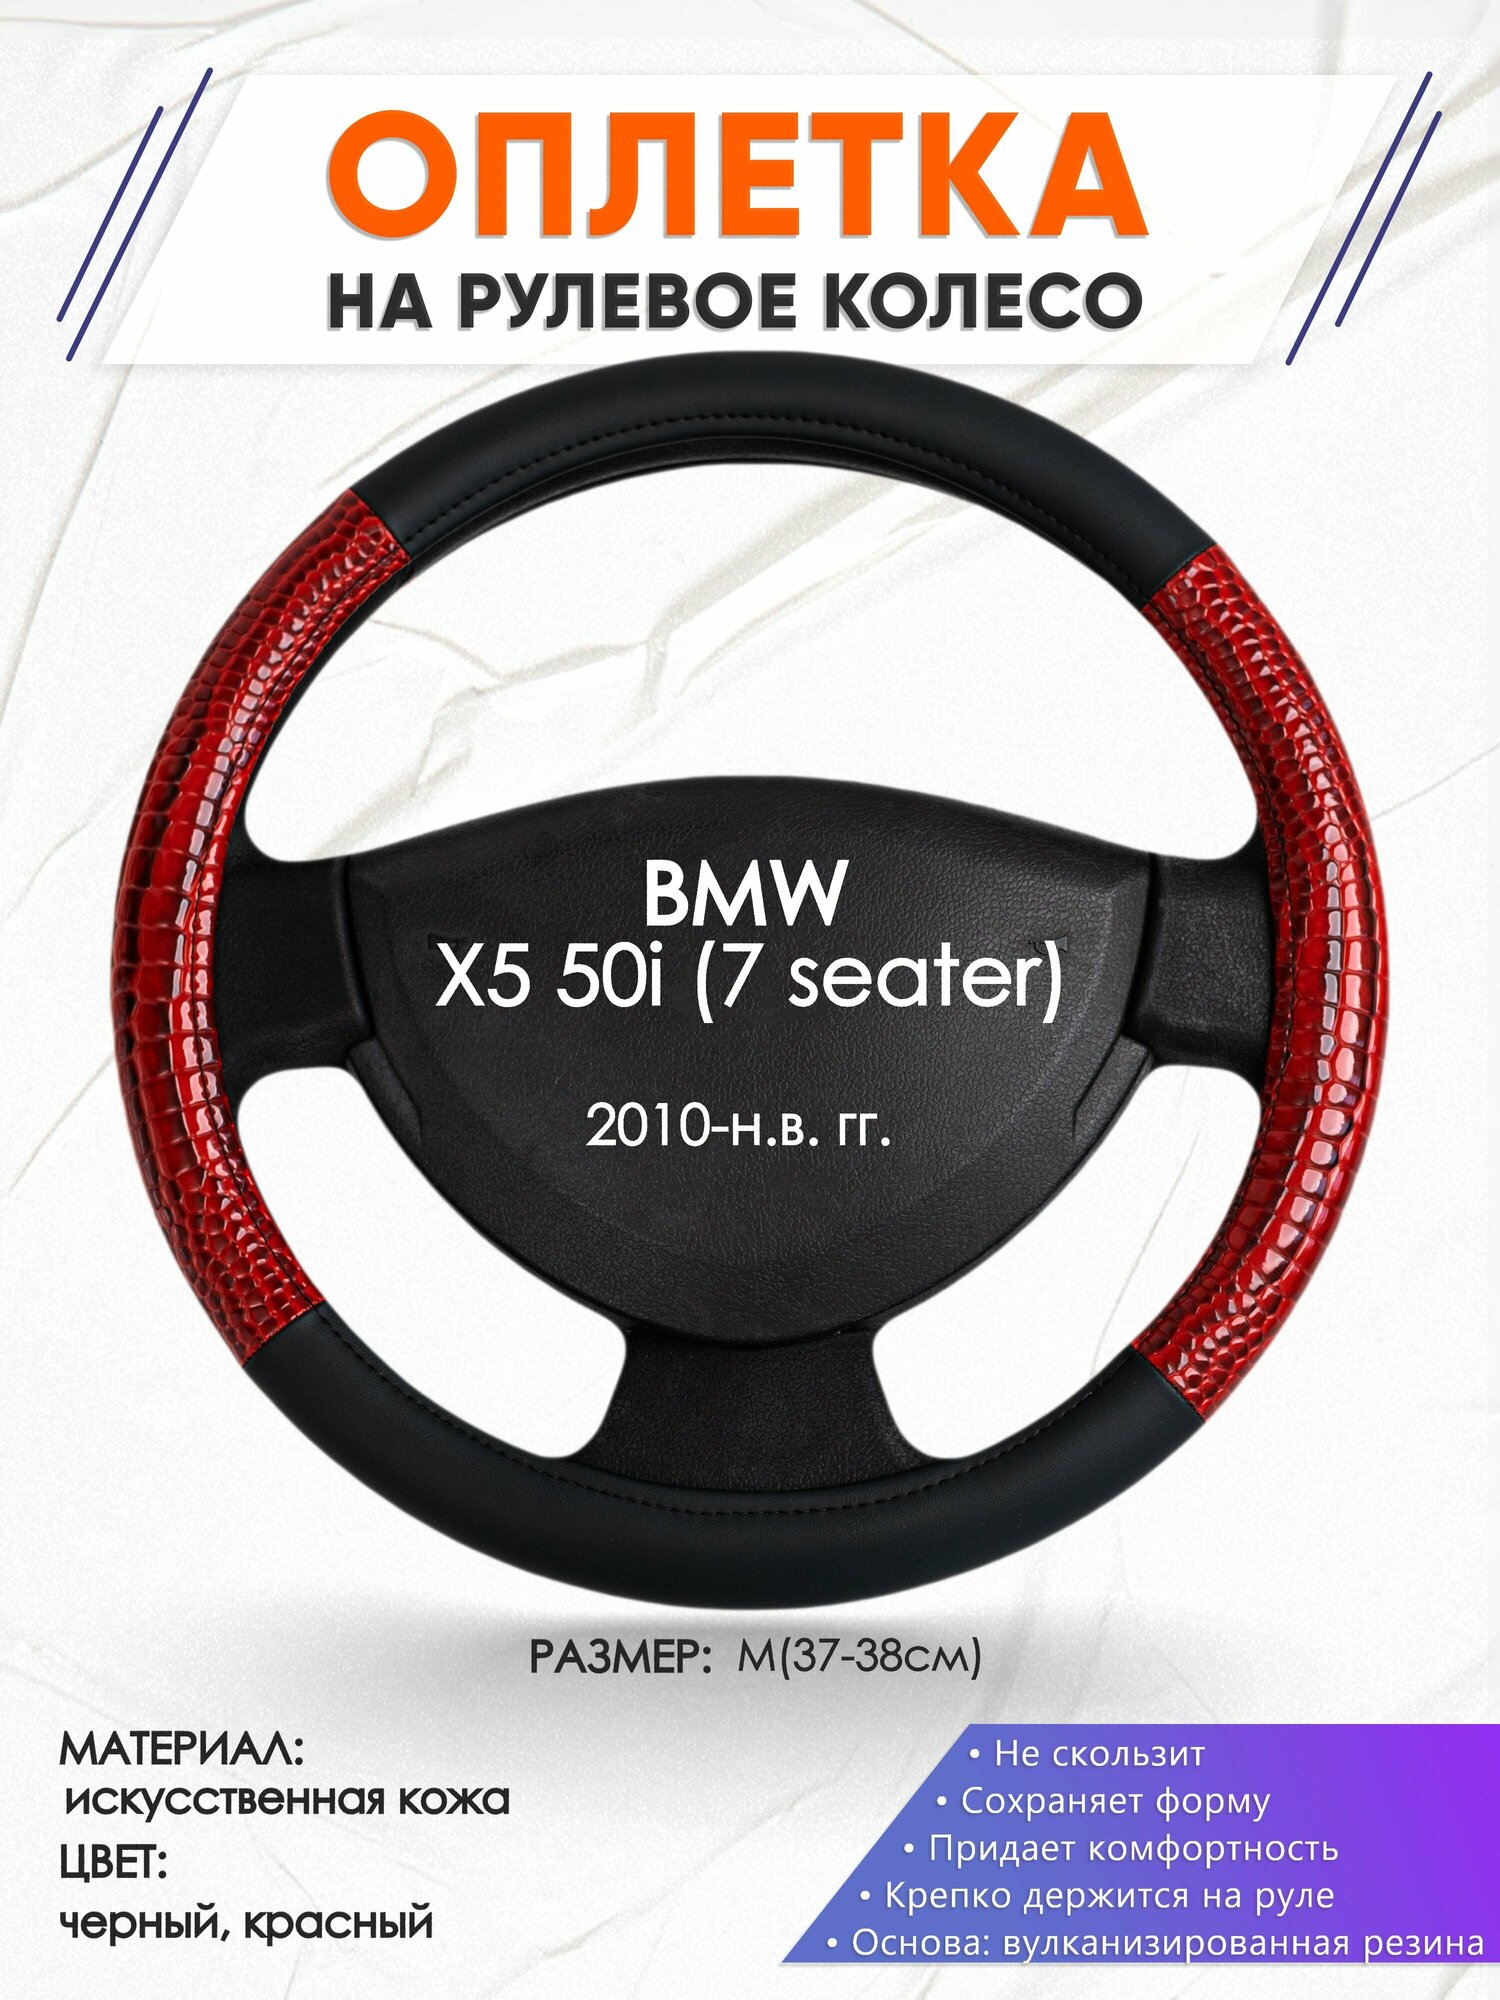 Оплетка наруль для BMW X5 50i (7 seater)(Бмв икс5) 2010-н. в. годов выпуска, размер M(37-38см), Искусственная кожа 16